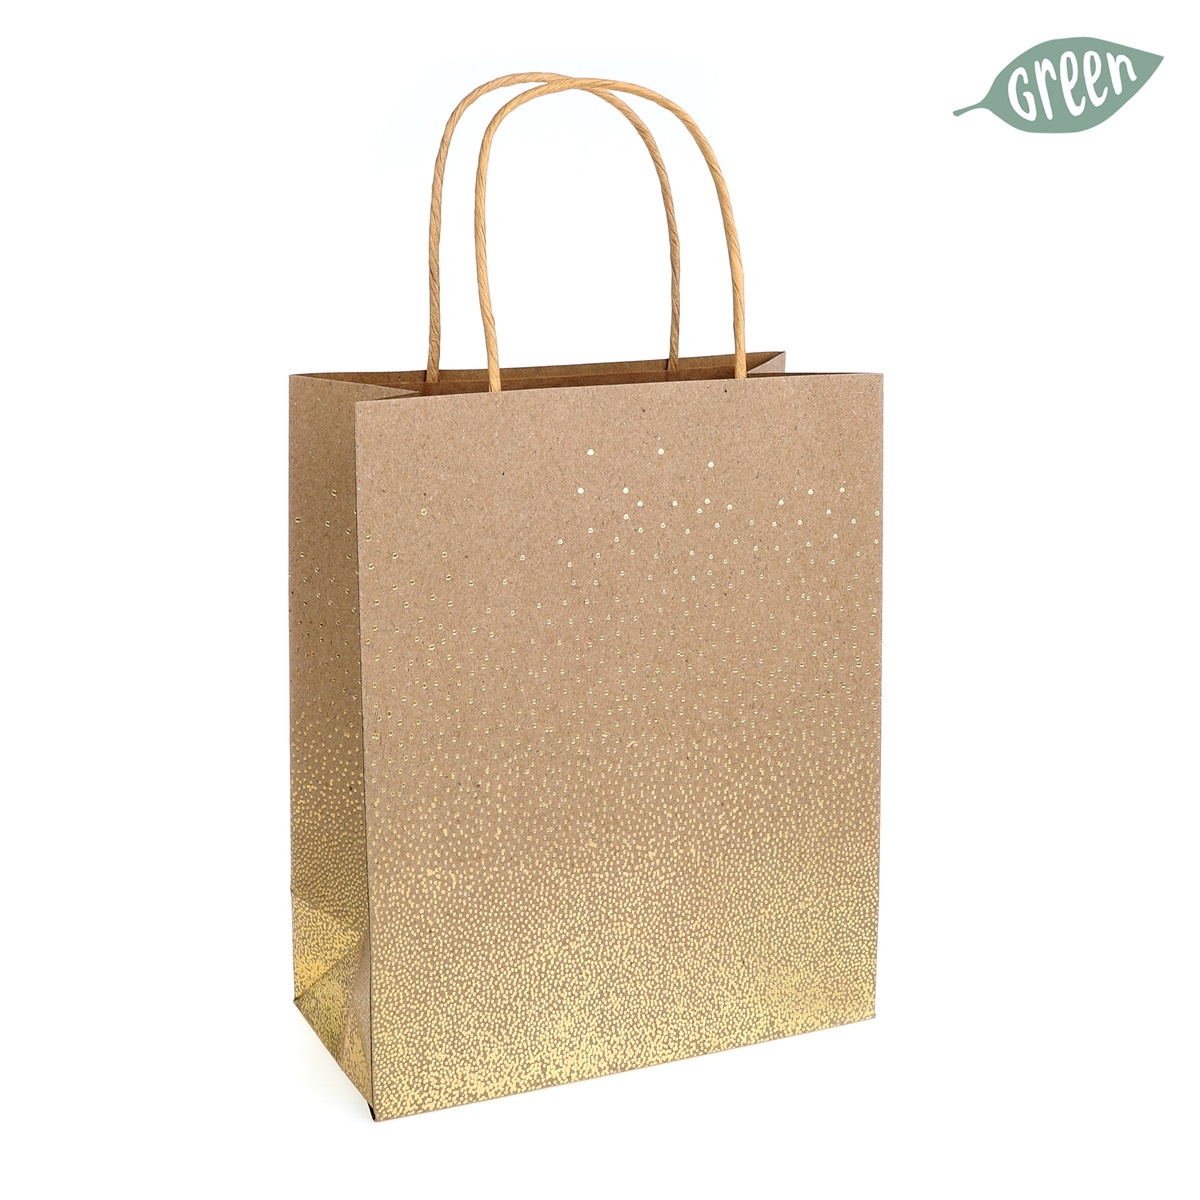 Grado paperbag groot - Kraft met gouden stipjes - set van 5 tasjes - 24,5*20 cm